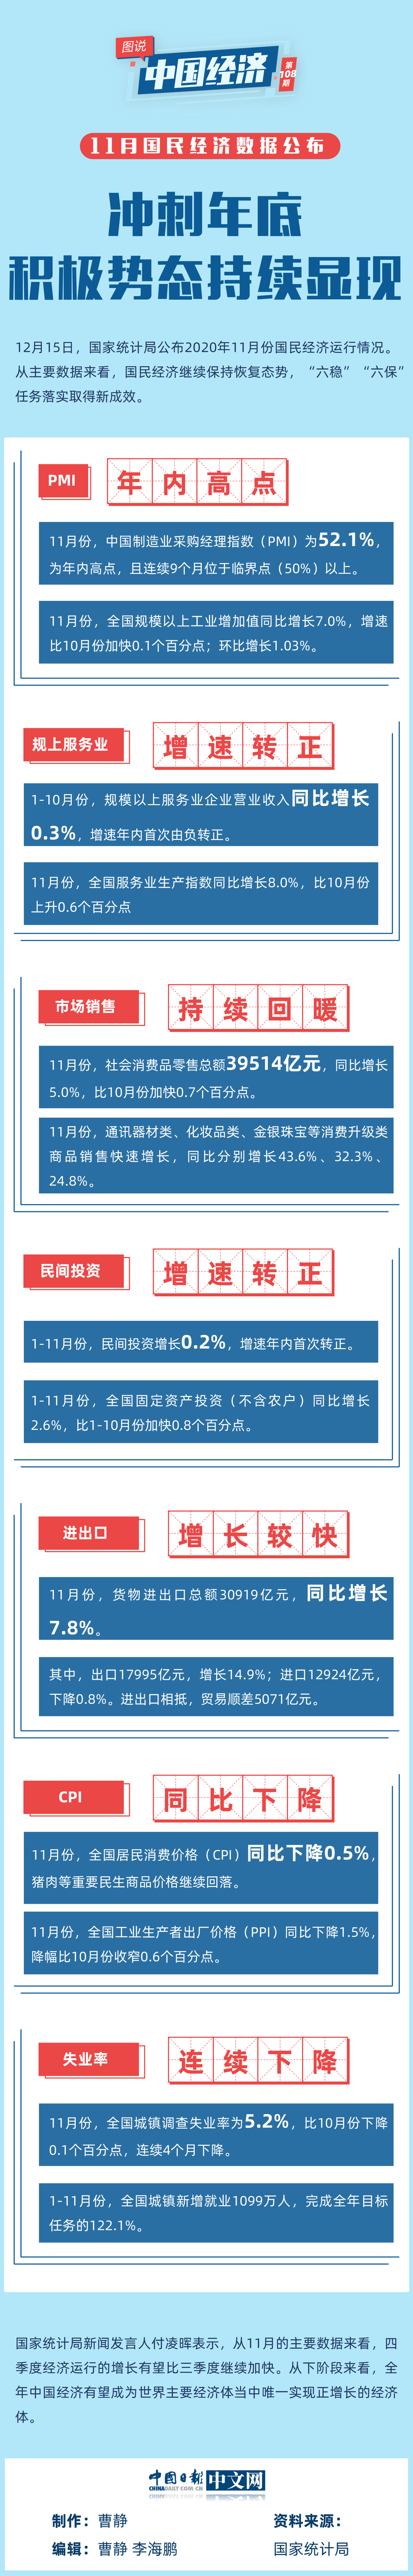 【图说中国经济】11月国民经济数据公布：冲刺年底 积极势态持续显现